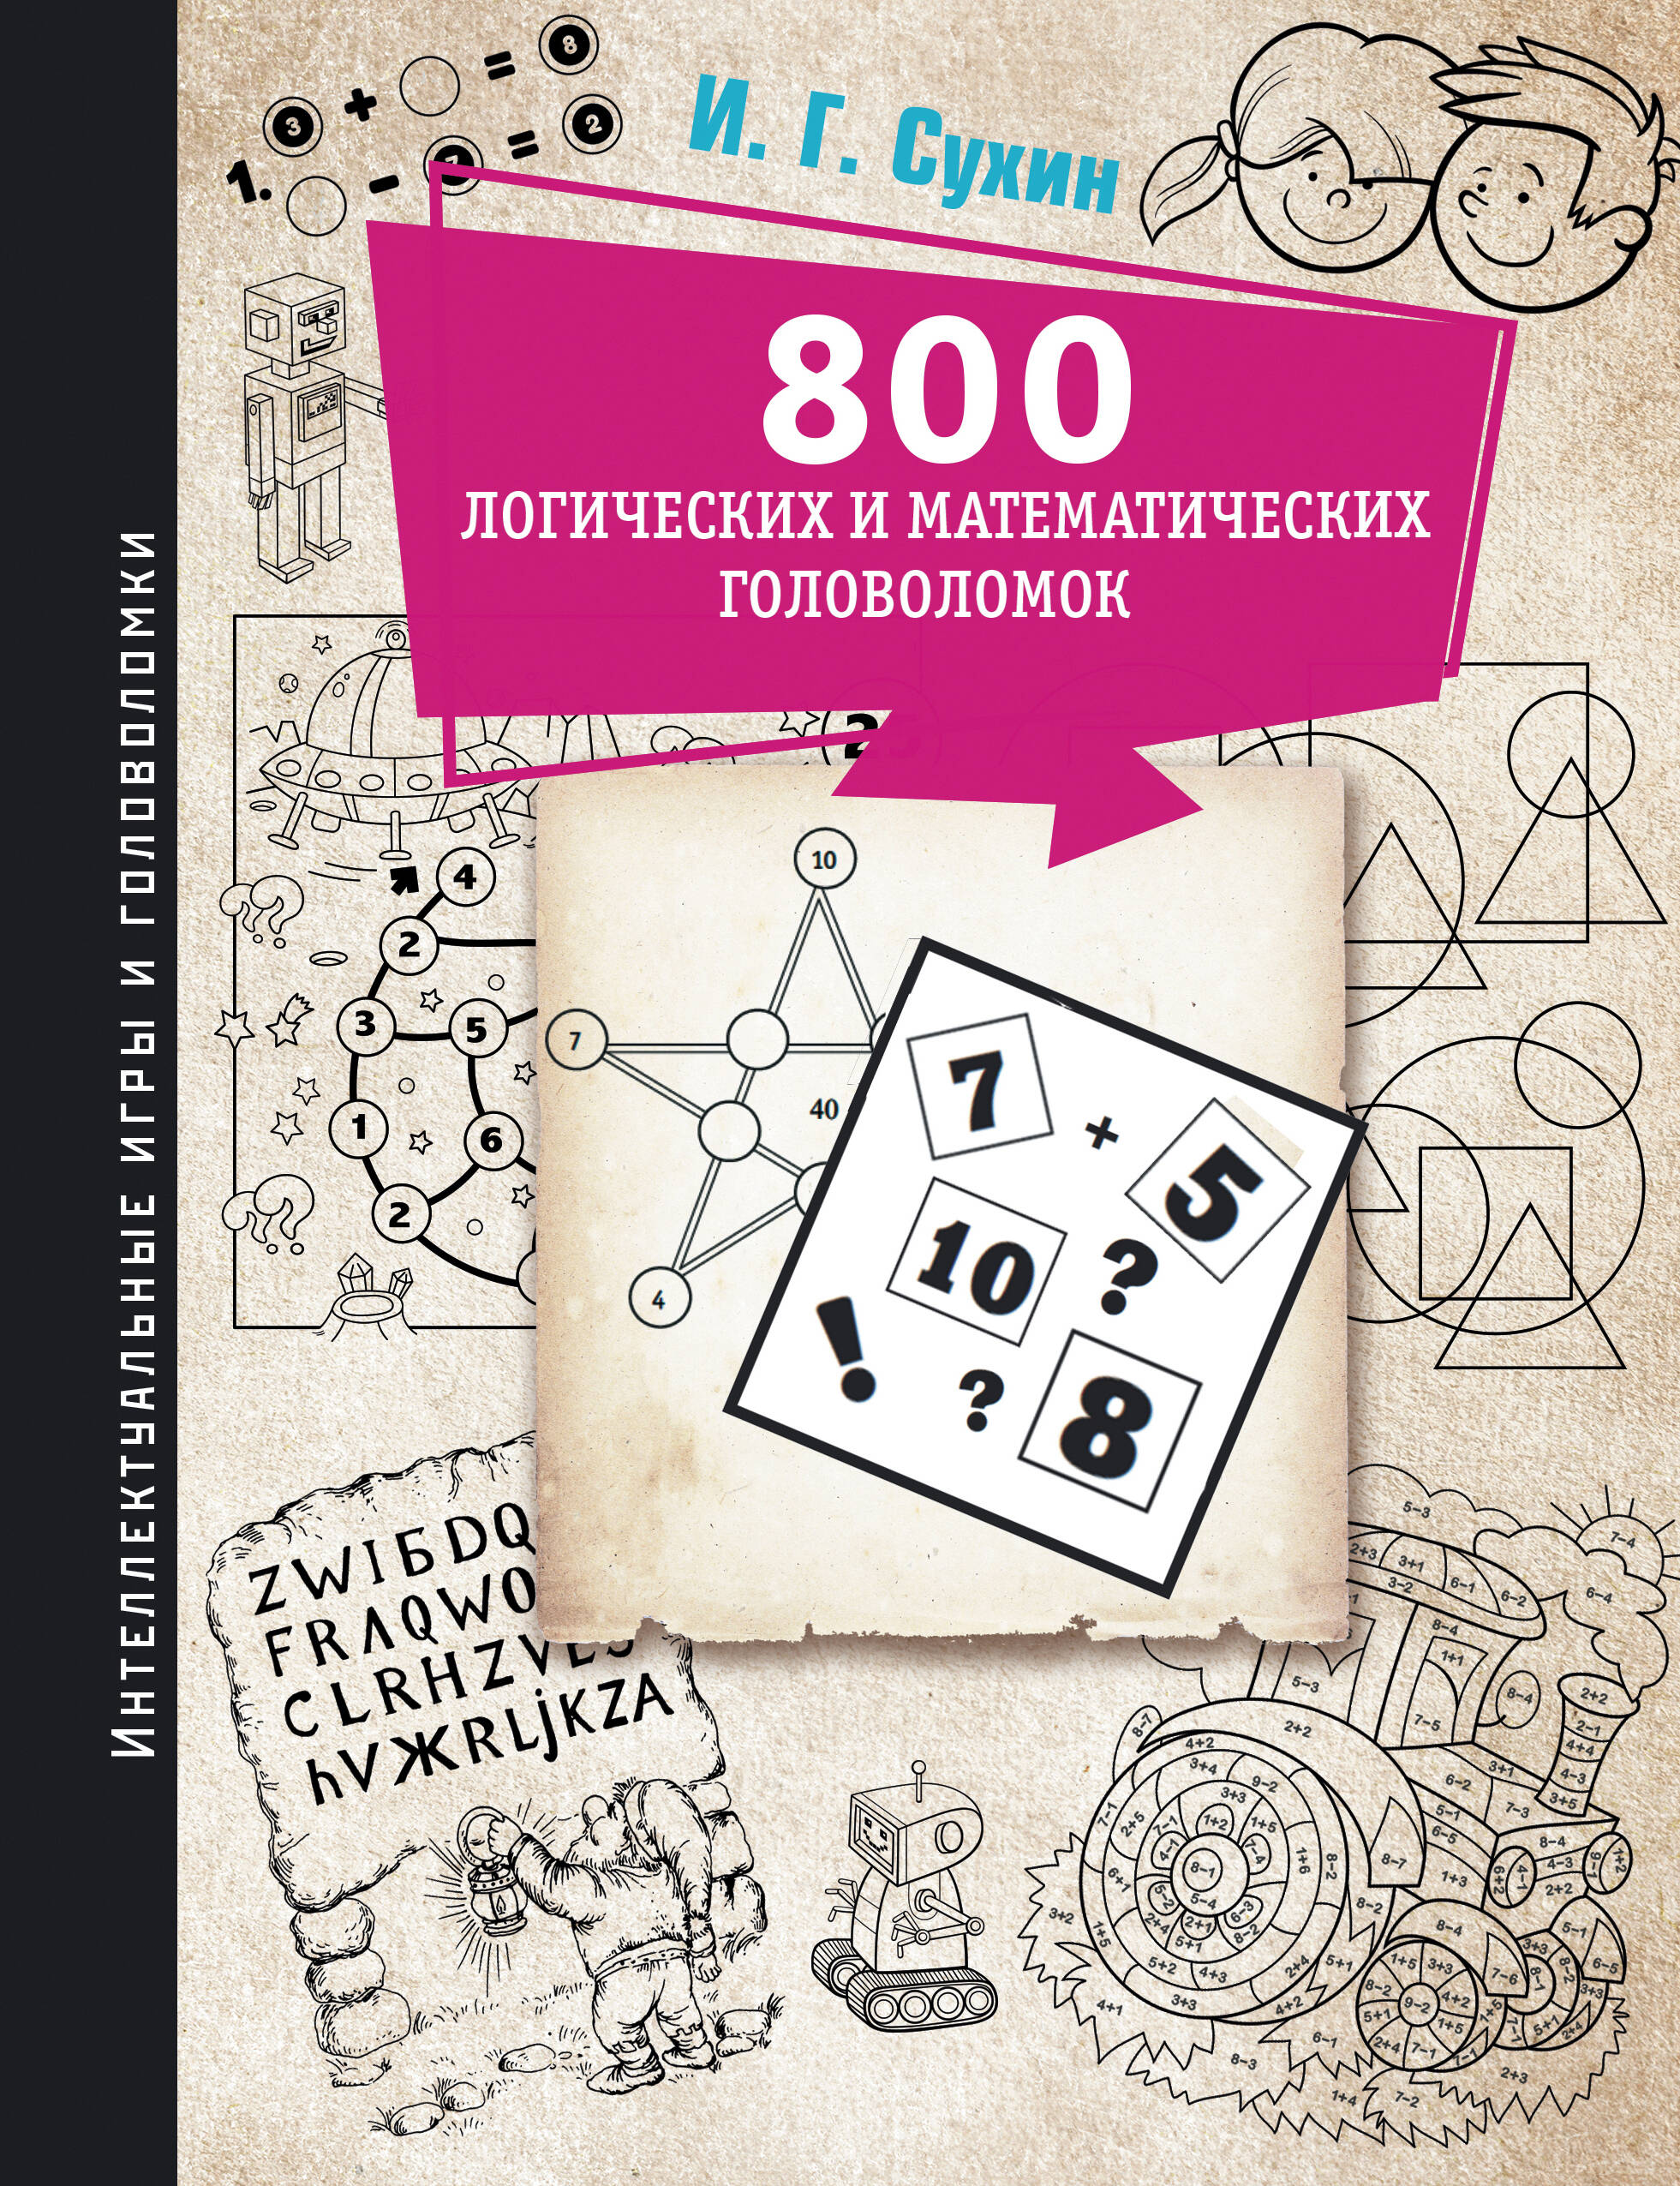 сухин игорь георгиевич тетрадь шахматиста 800 логических и математических головоломок